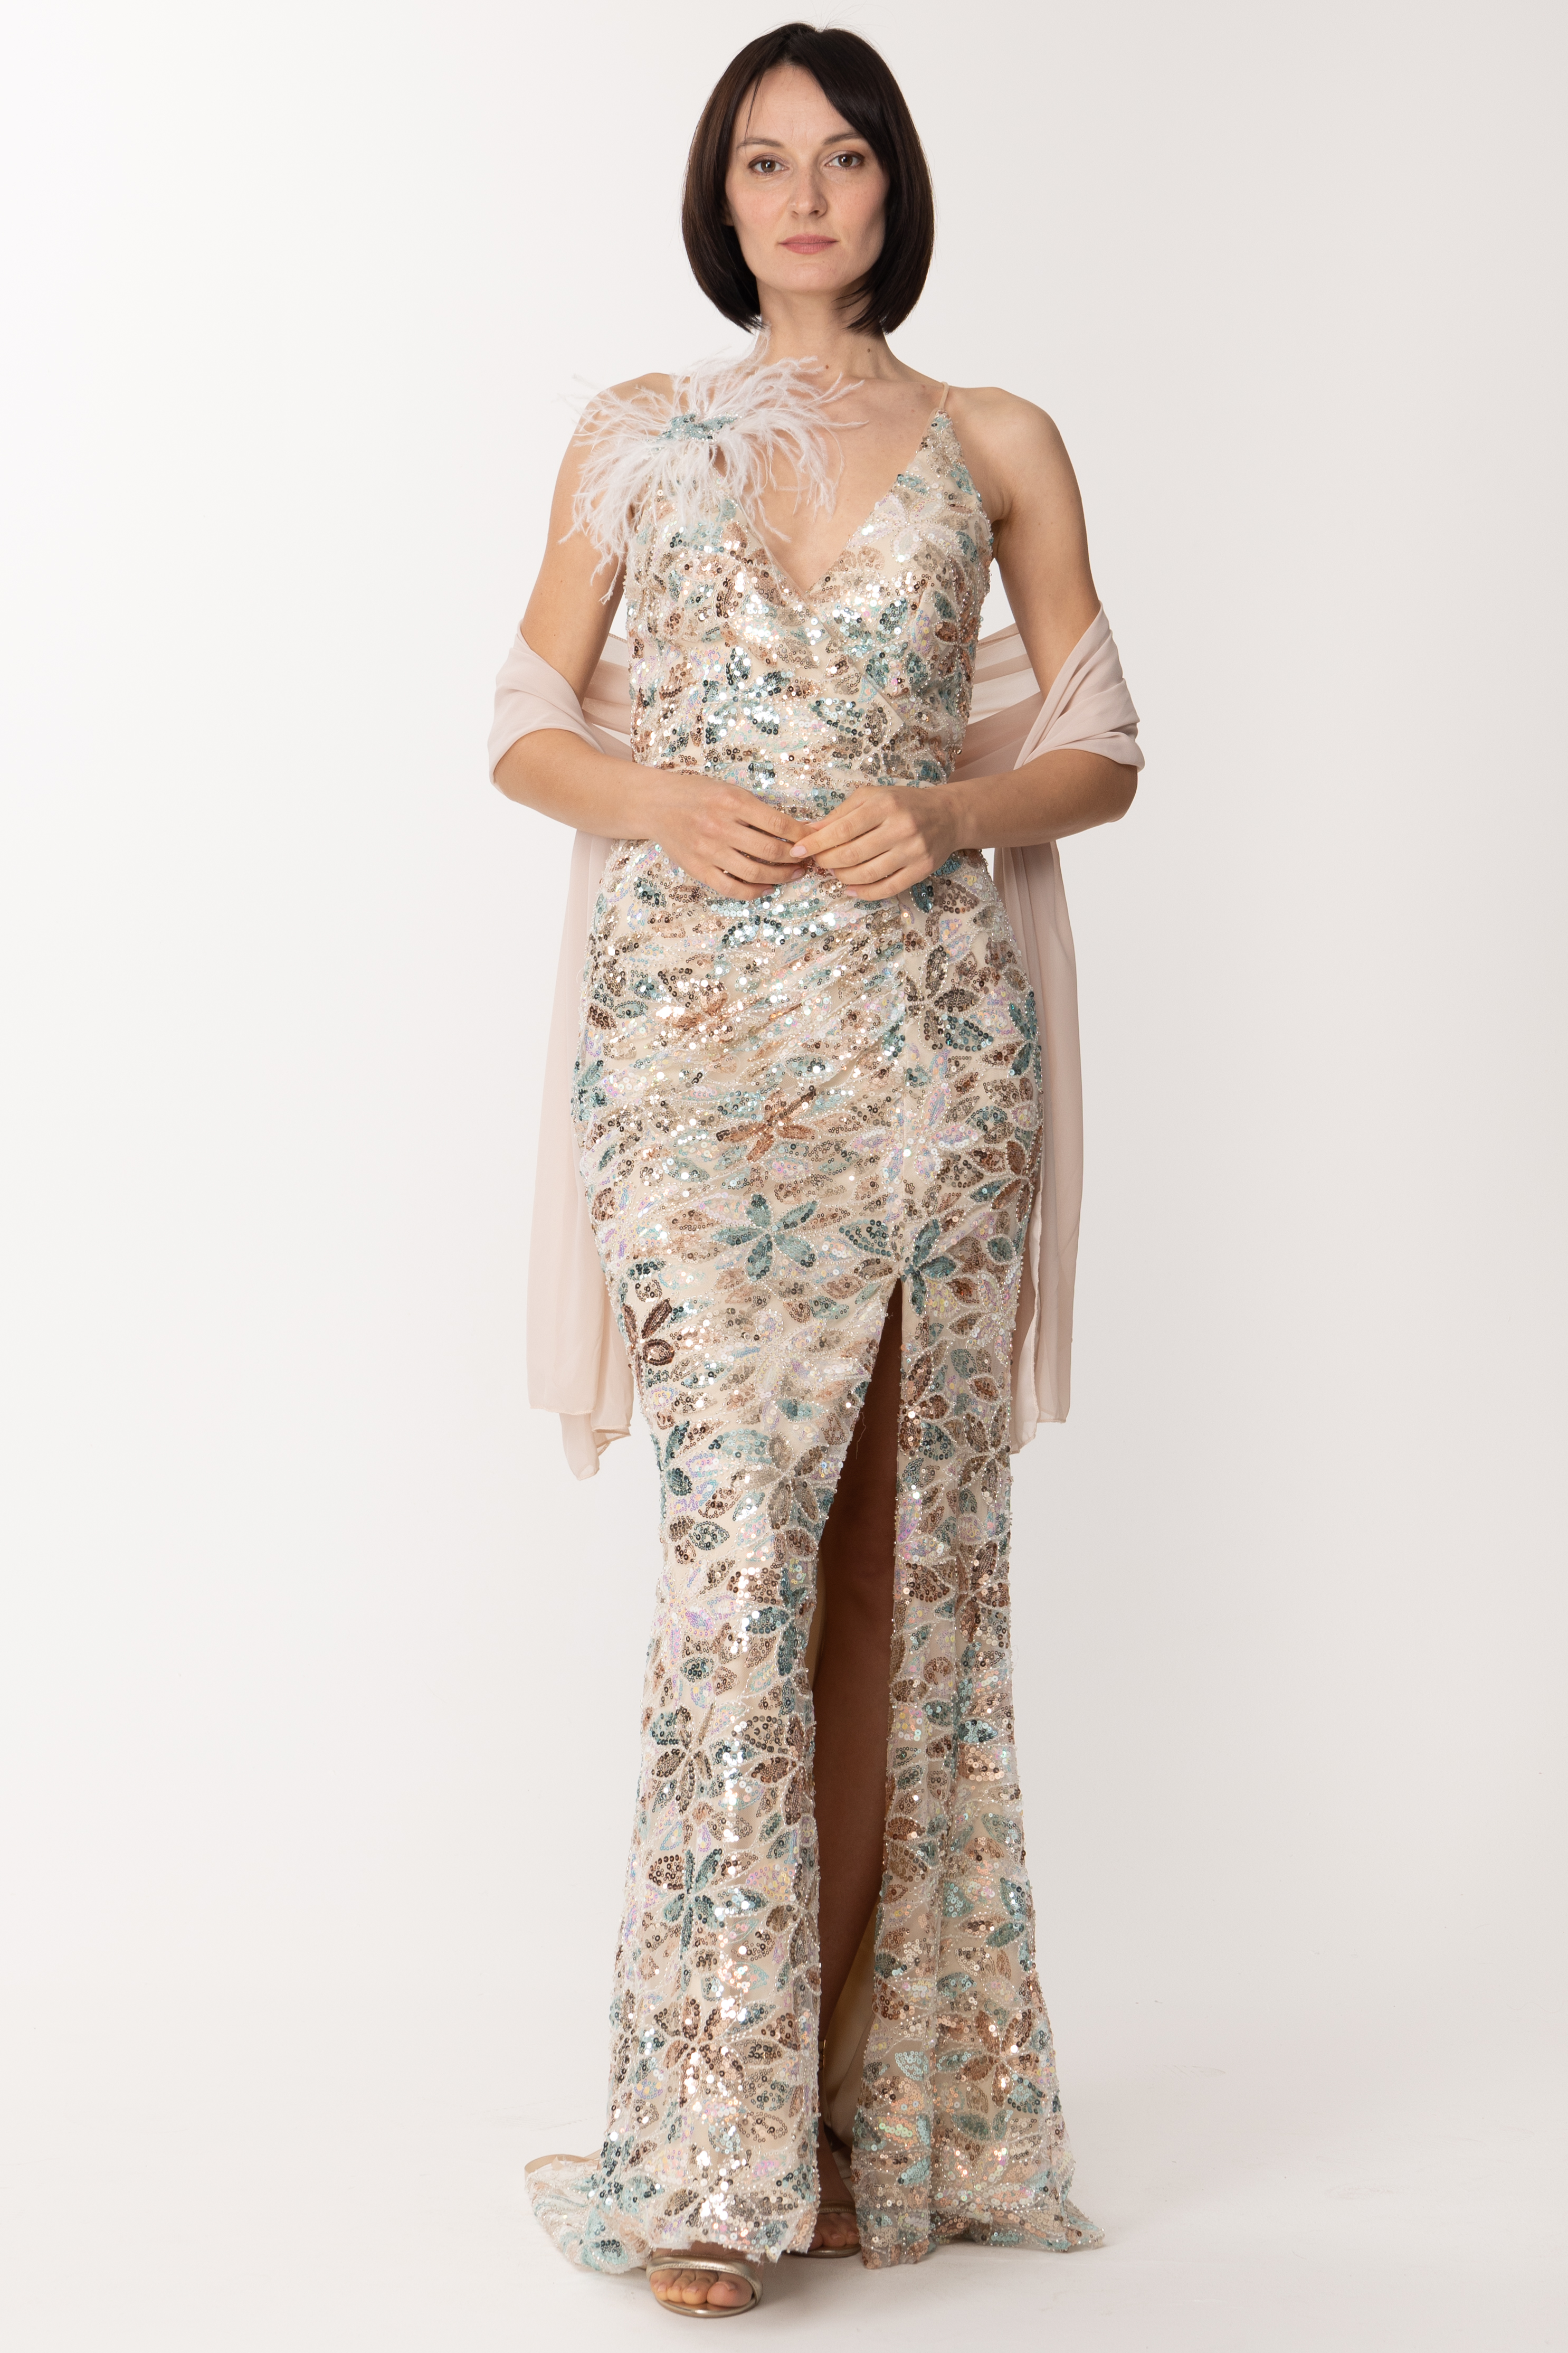 Vorschau: Fabiana Ferri Langes Kleid mit Pailletten und Feder-Accessoire Salvia